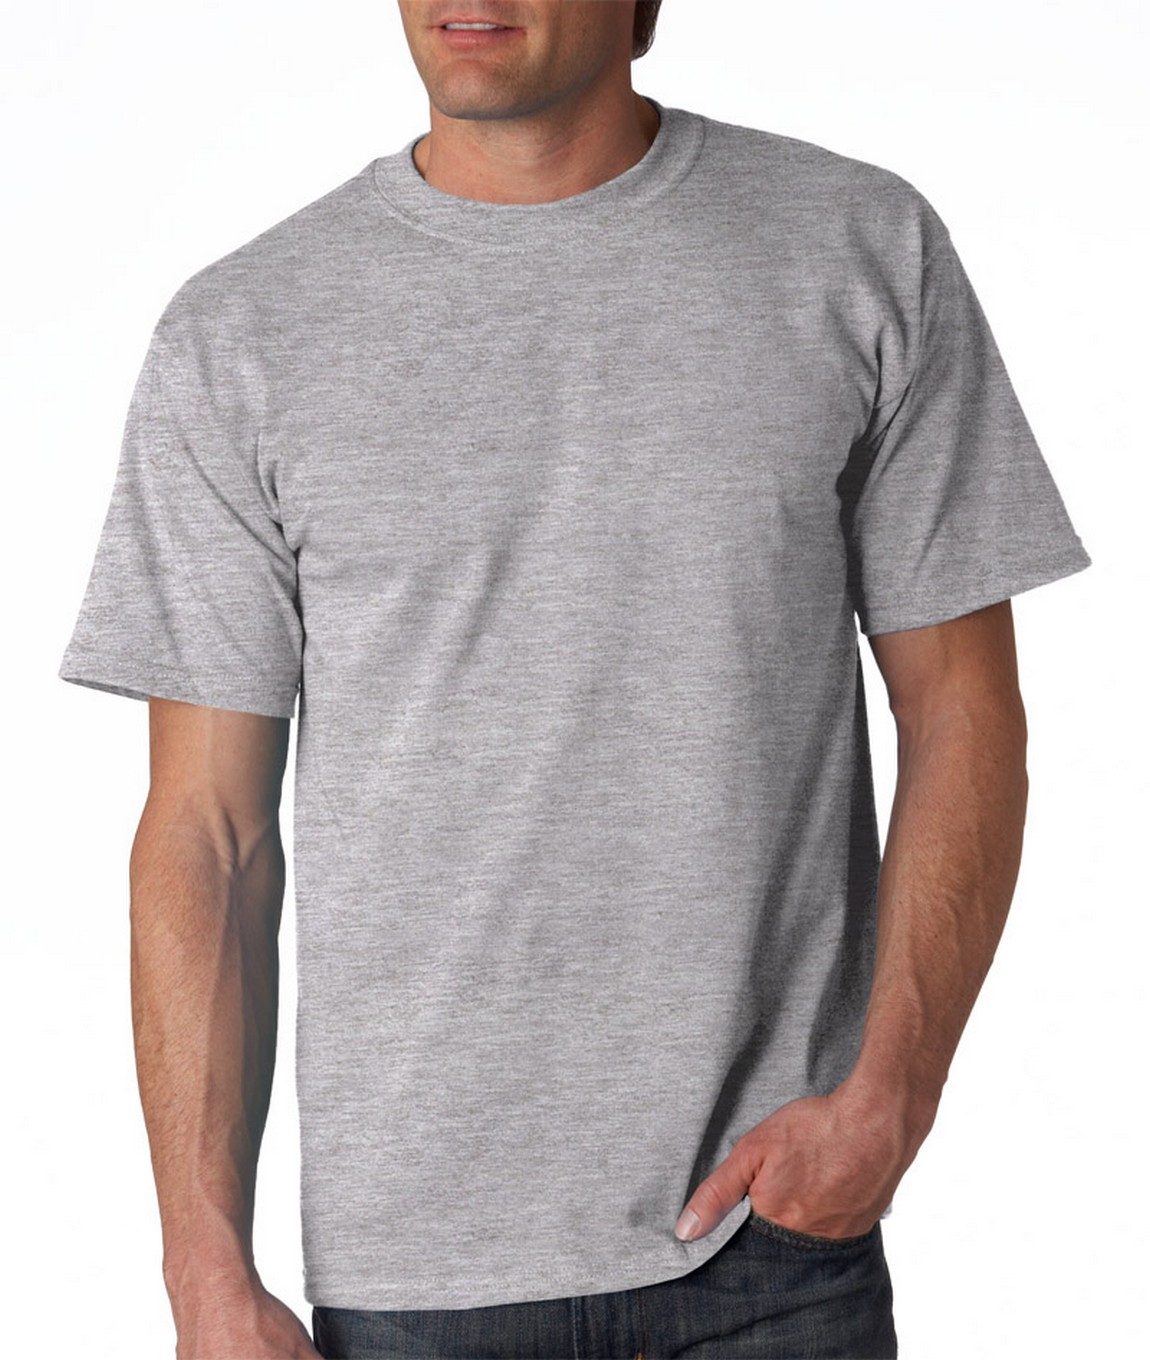 sport gray t shirt